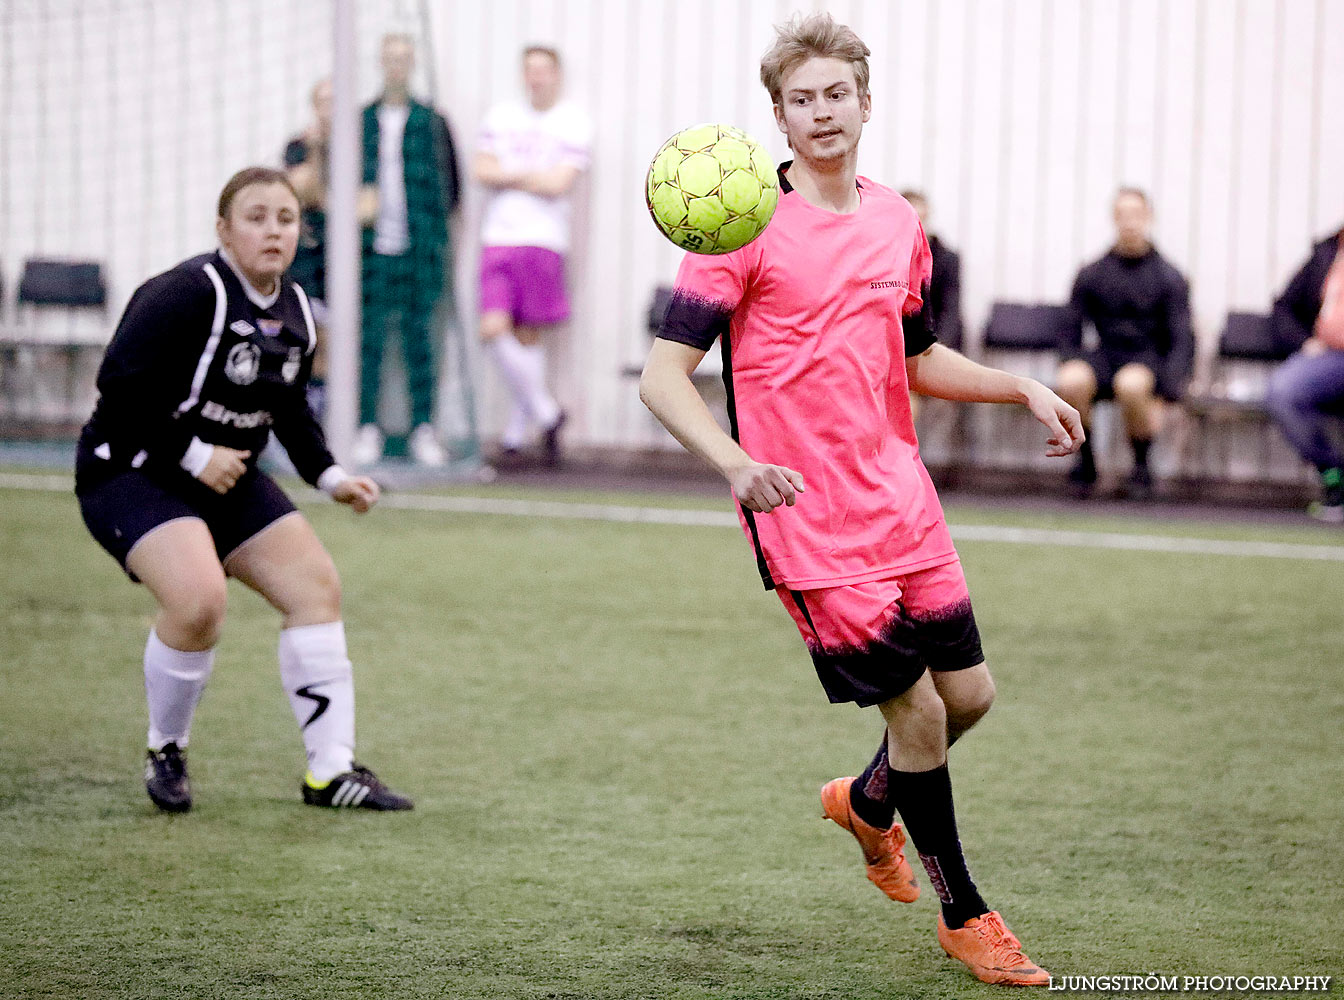 Skövde Soccer Championship,mix,Ulvahallen,Ulvåker,Sverige,Fotboll,,2016,143225